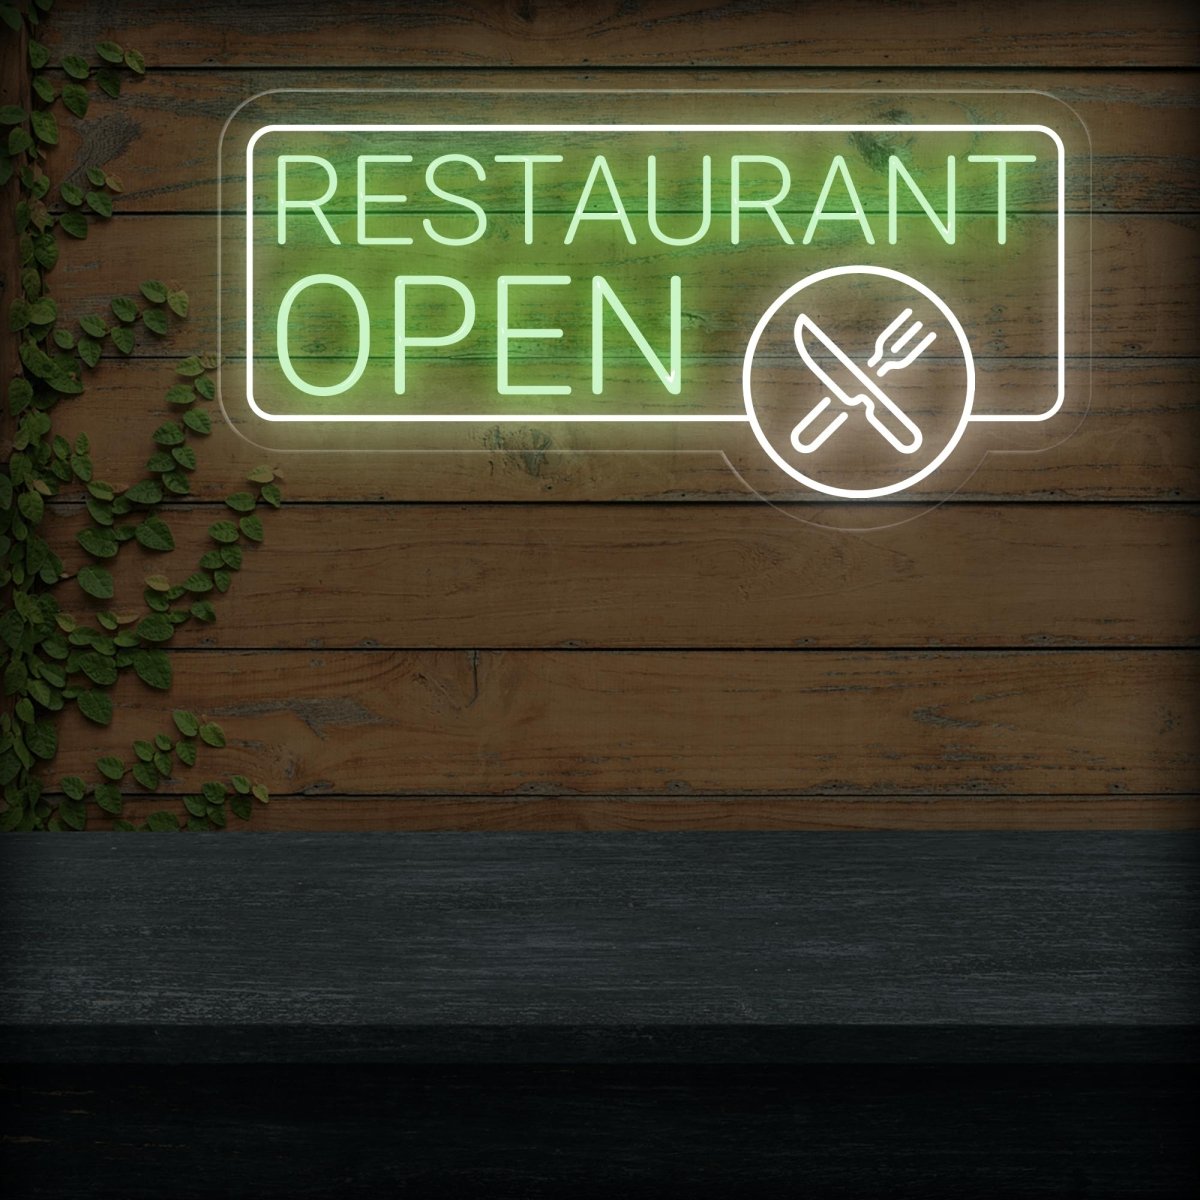 Restaurant Open Neon Sign | LED Light Up Sign - NEONXPERT